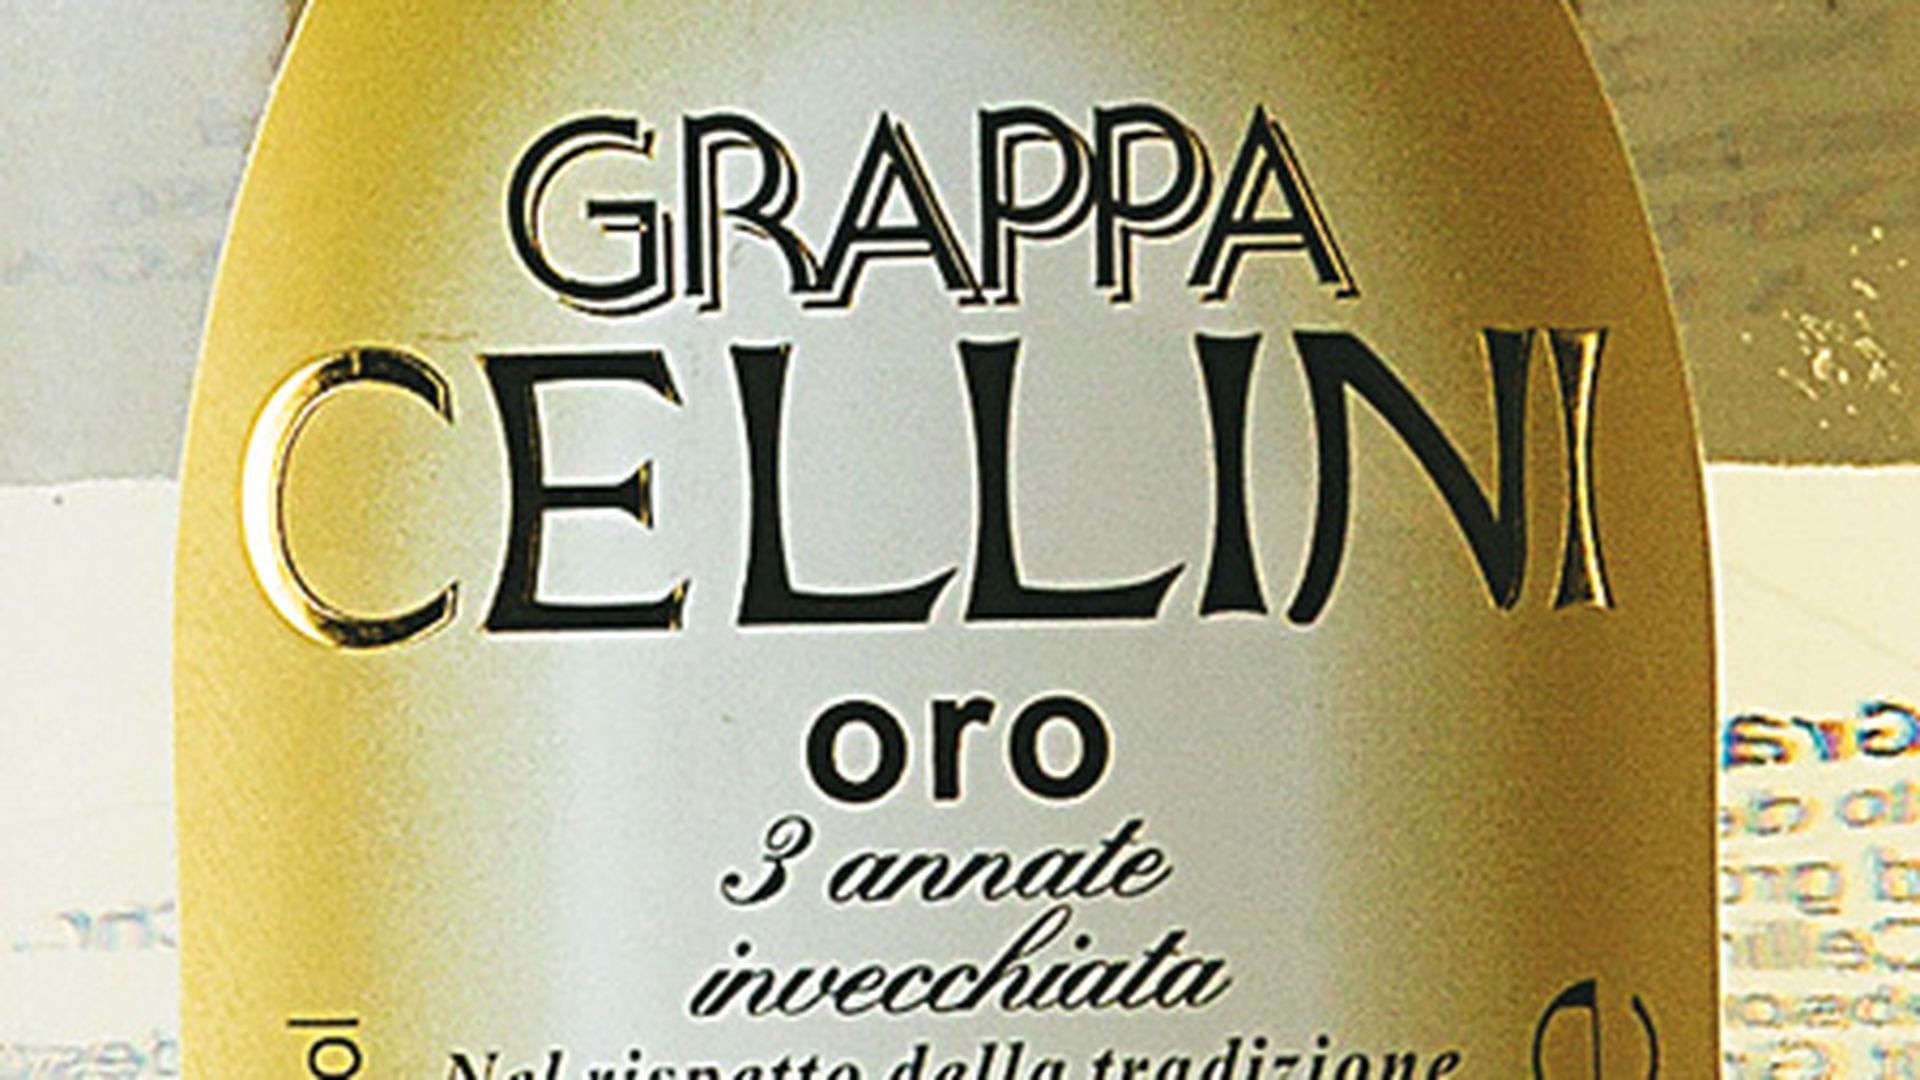 Cellini Grappa Oro